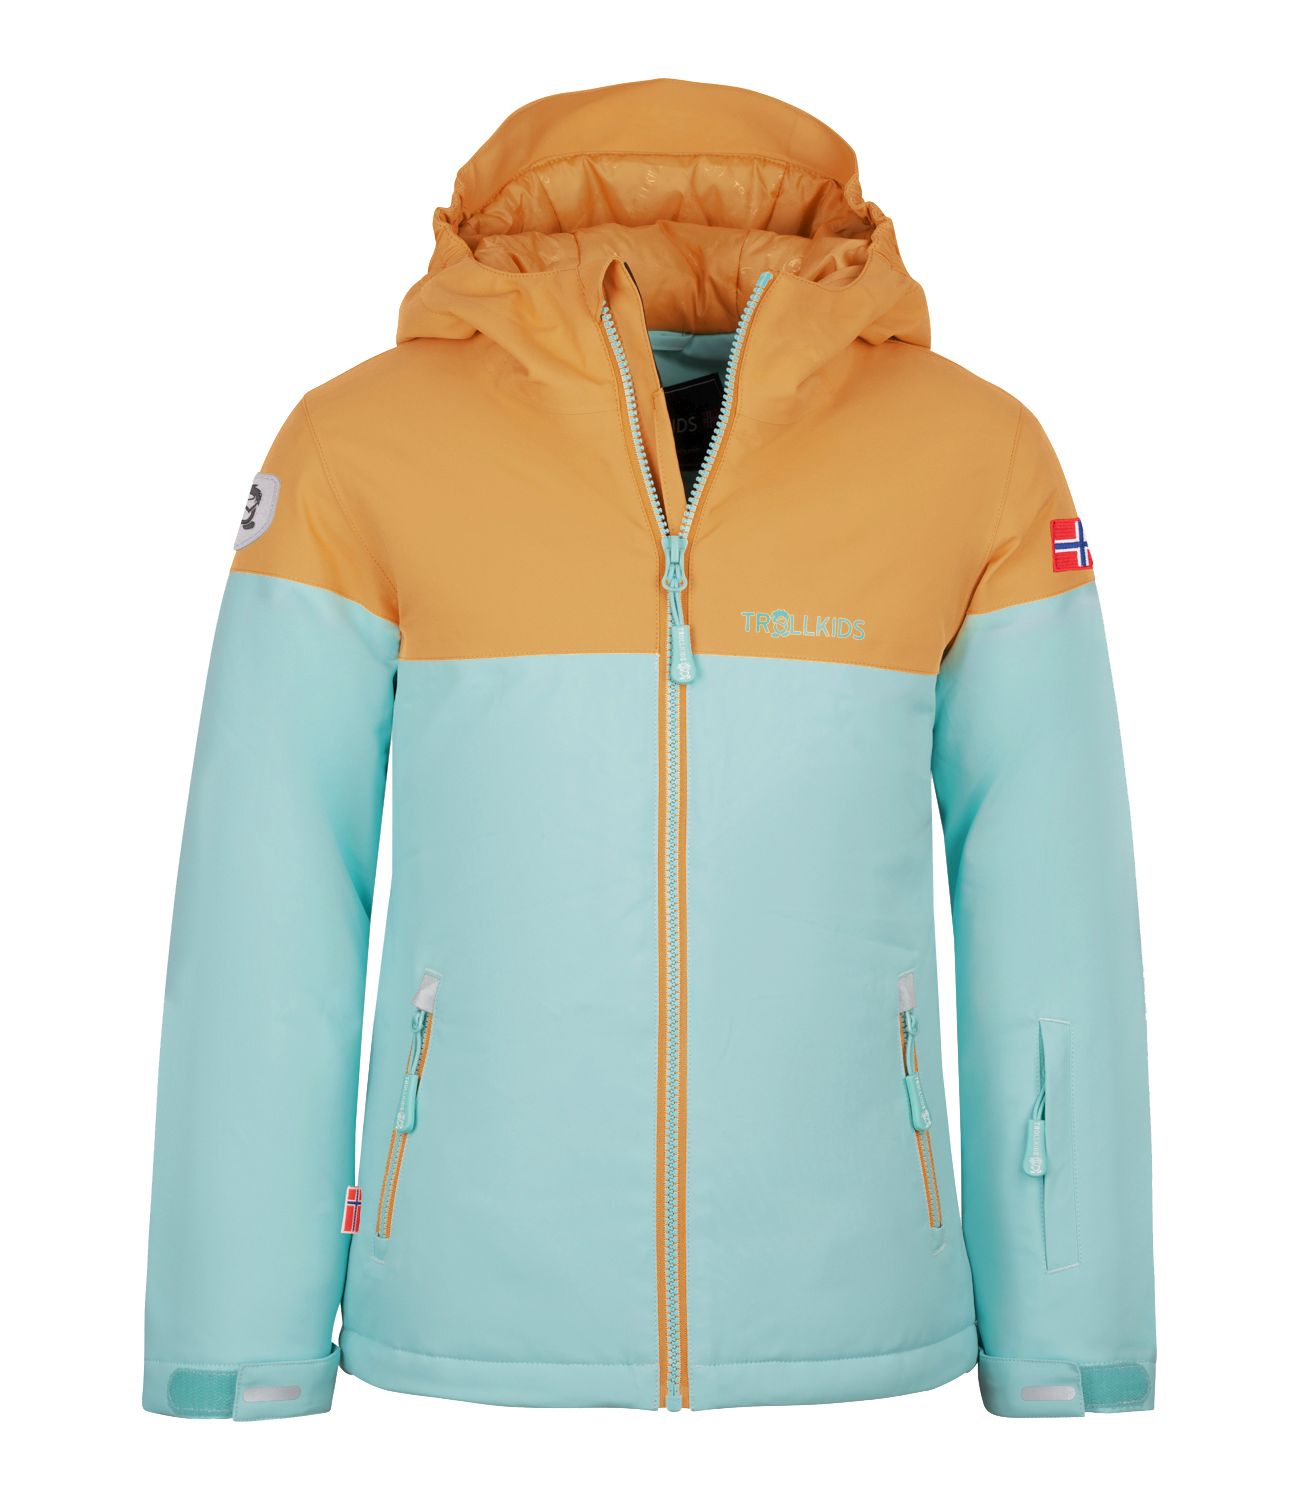 Hallingdal TROLLKIDS ski jacket